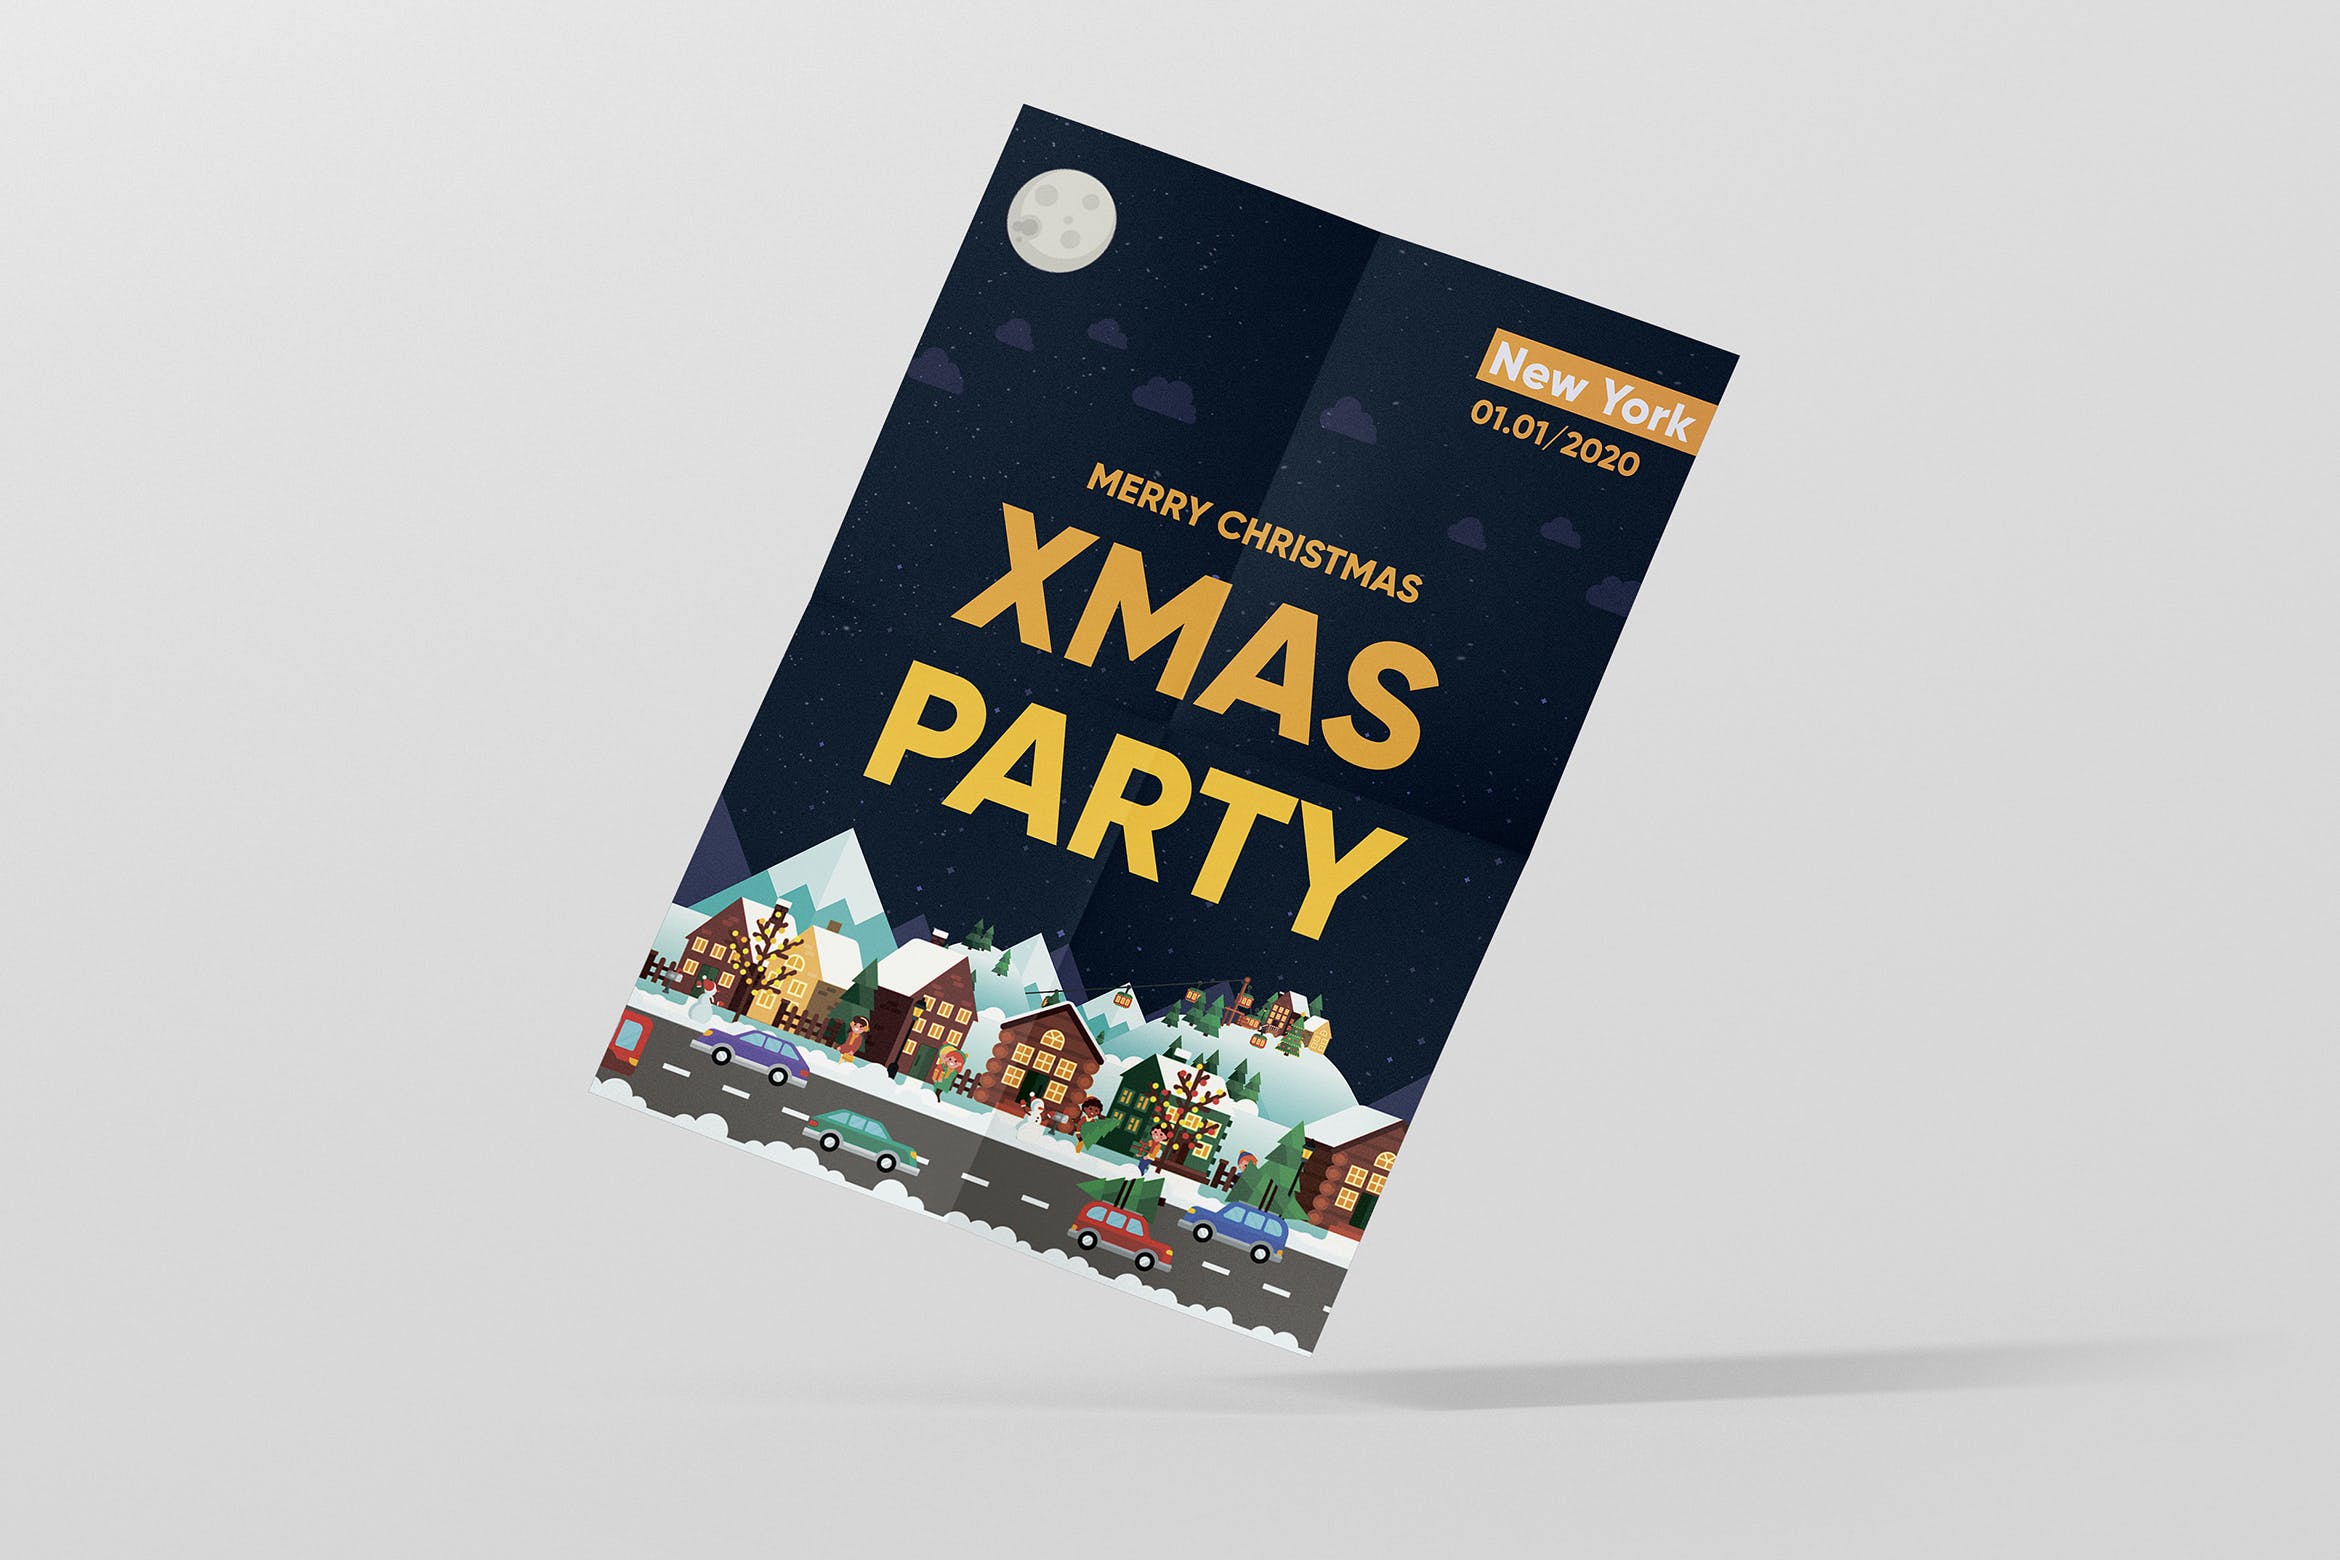 创意城市街景插画背景圣诞节主题海报设计模板 Christmas Party Poster插图